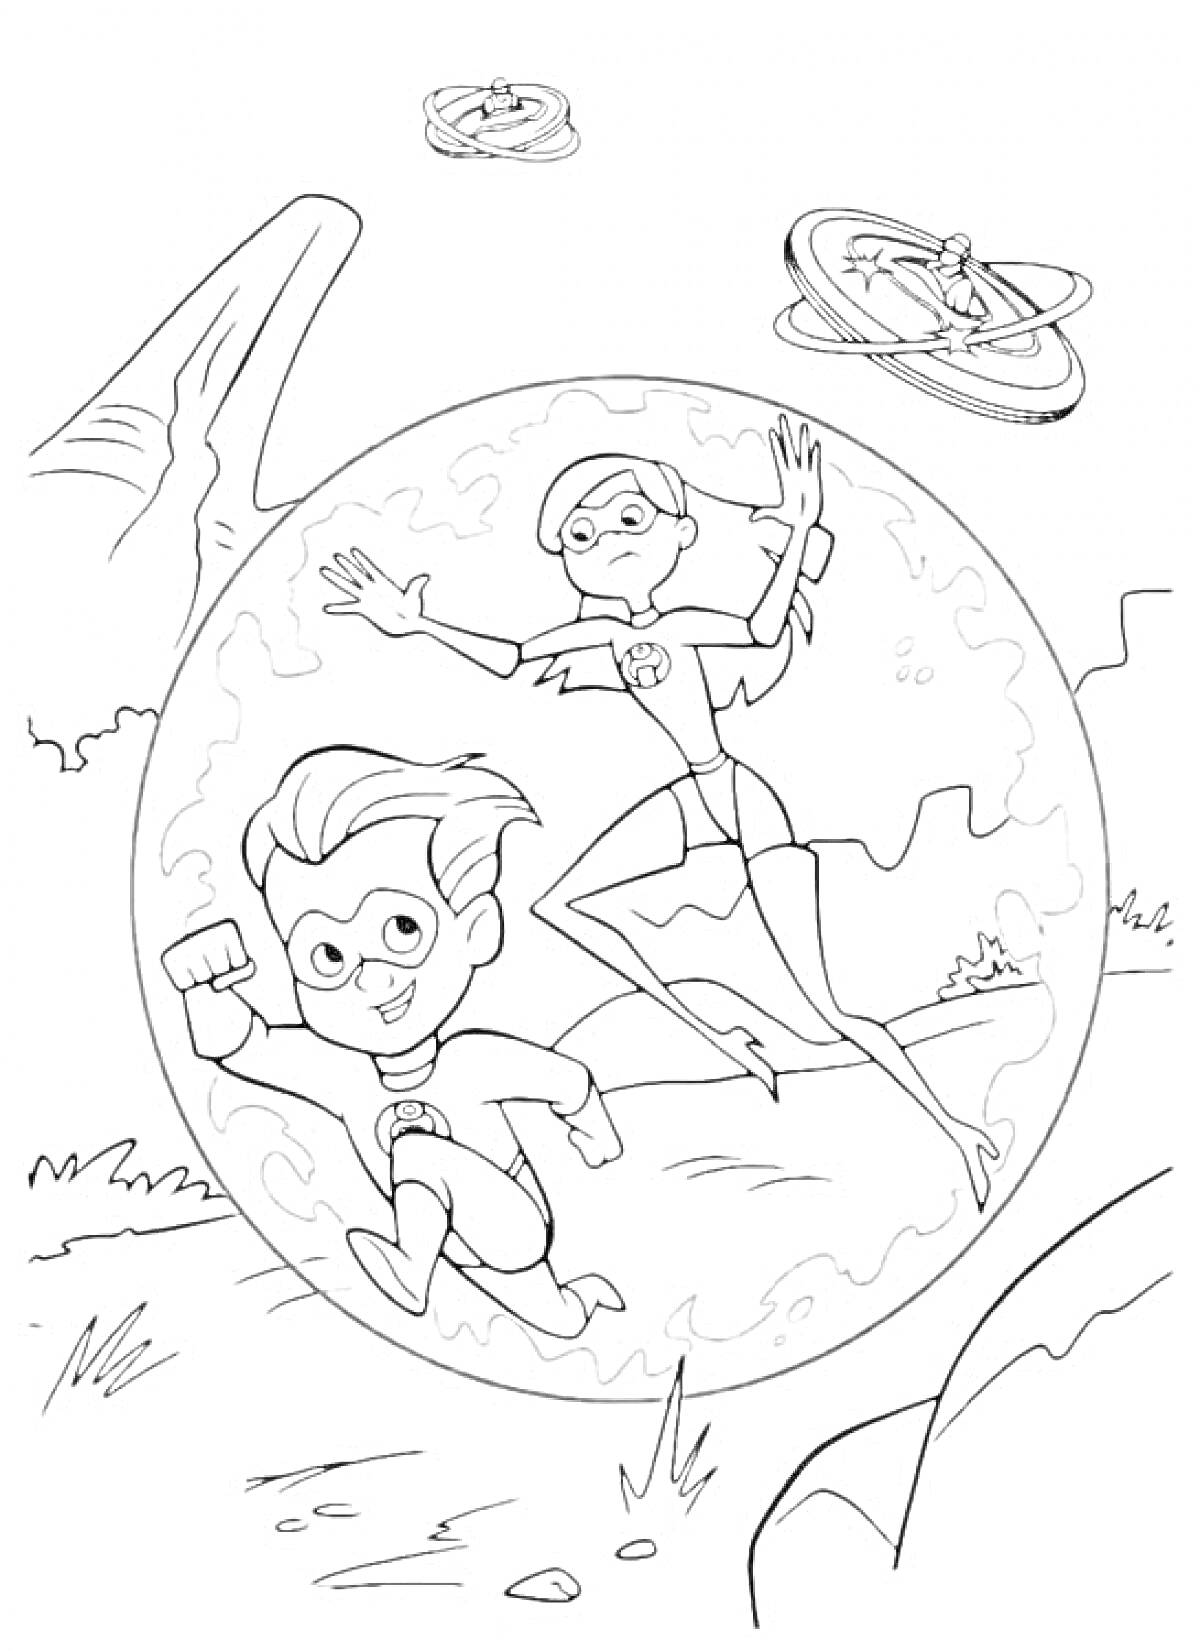  Мальчик и девочка в супергеройских костюмах в пузыре, два летательных устройства на заднем плане 